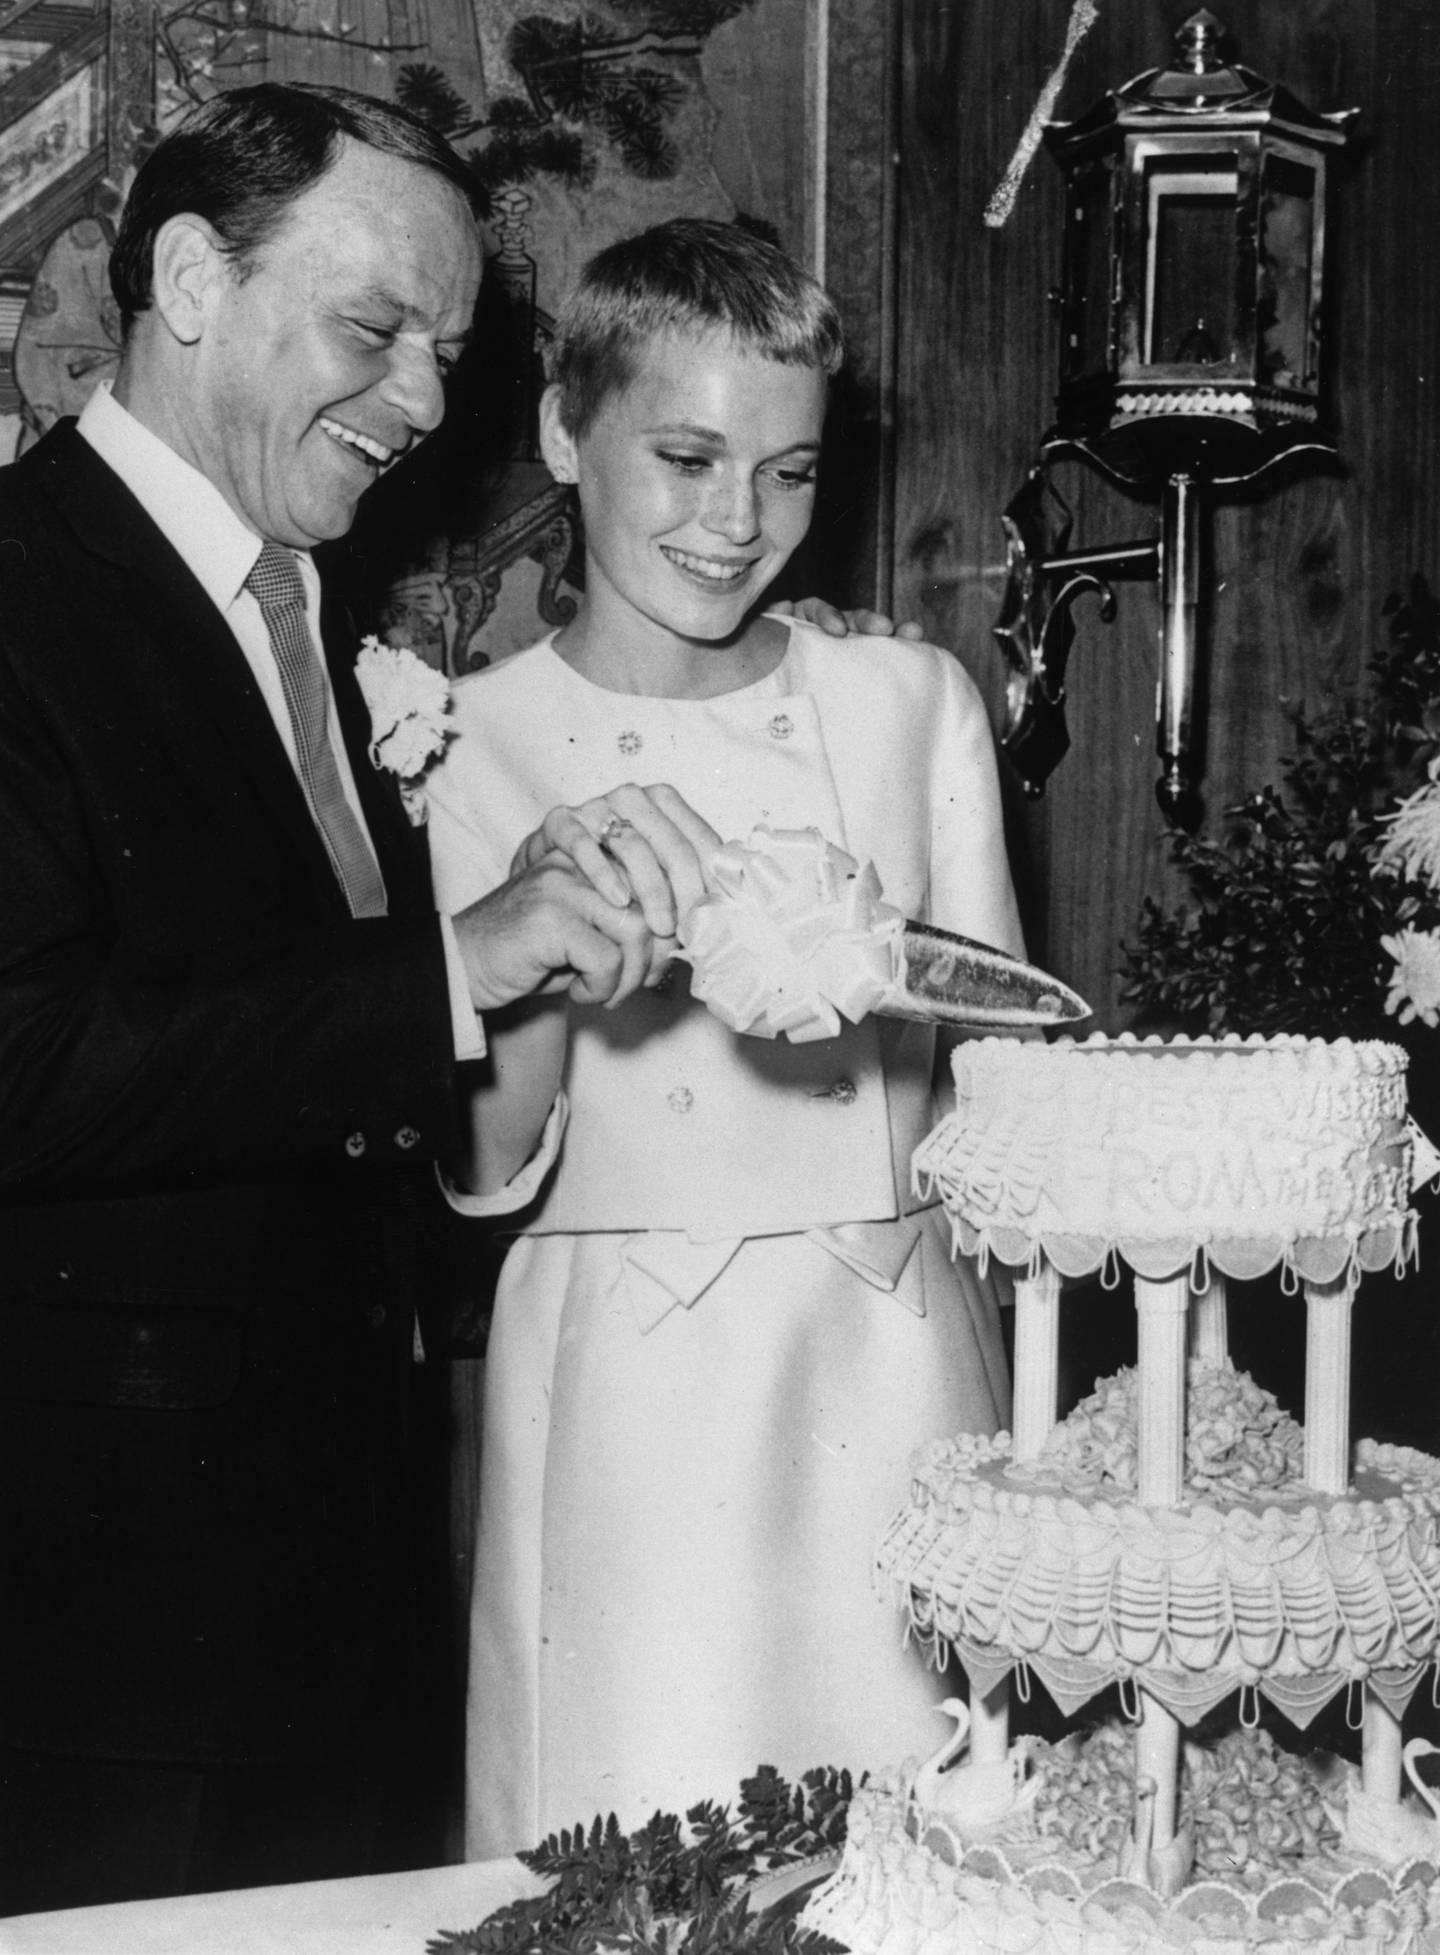 19 juillet 1966 : le chanteur Frank Sinatra et l'actrice Mia Farrow coupent leur gâteau de mariage à Las Vegas.  Getty Images